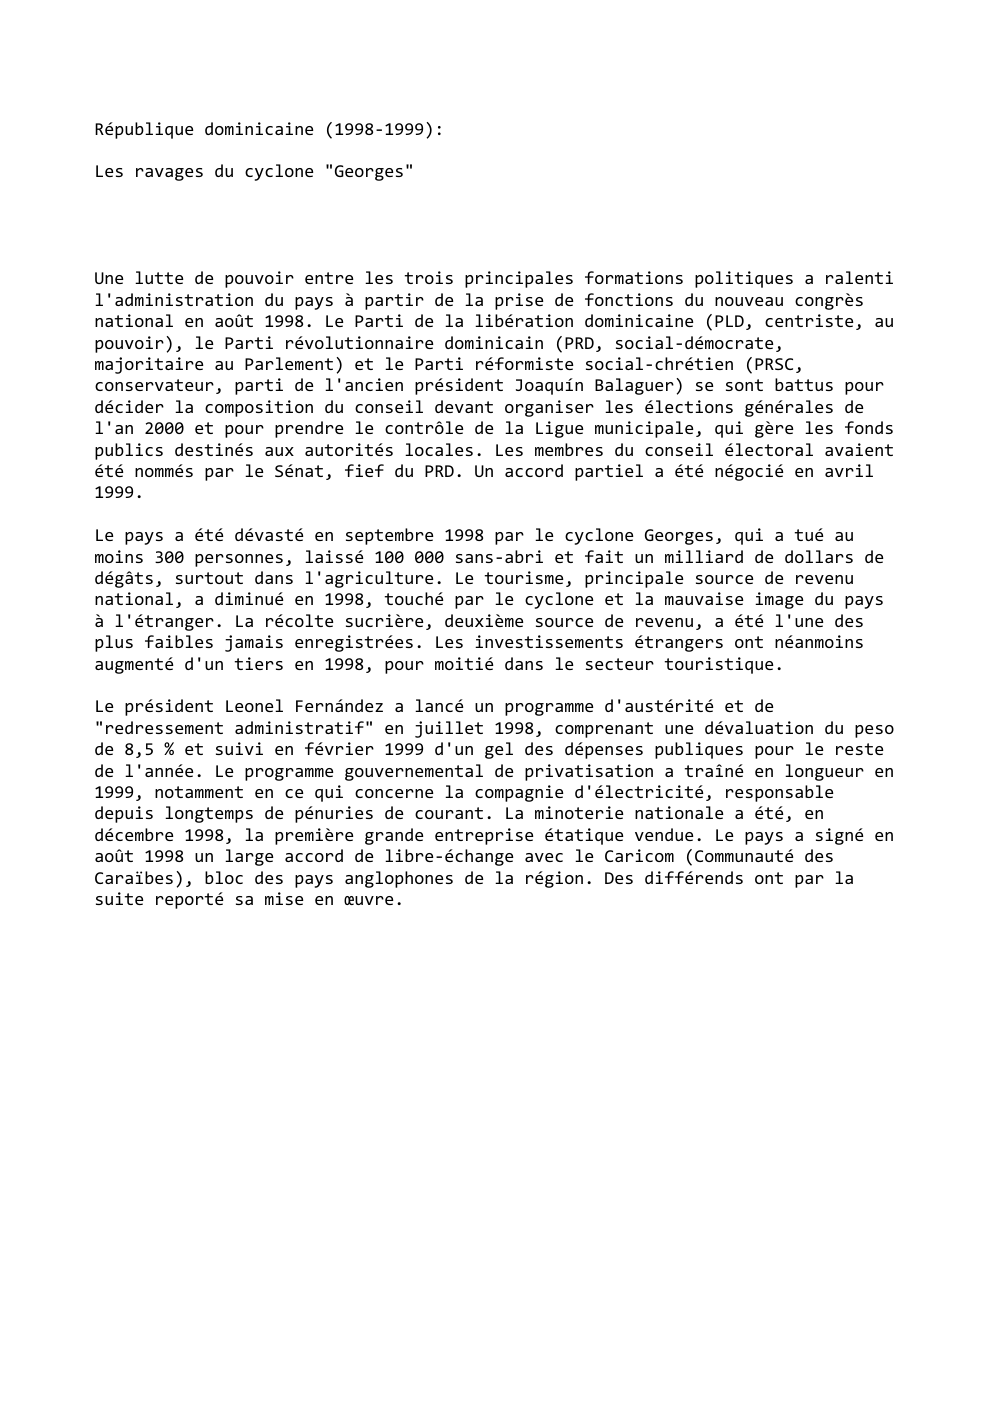 Prévisualisation du document République dominicaine (1998-1999):
Les ravages du cyclone "Georges"

Une lutte de pouvoir entre les trois principales formations politiques a ralenti...